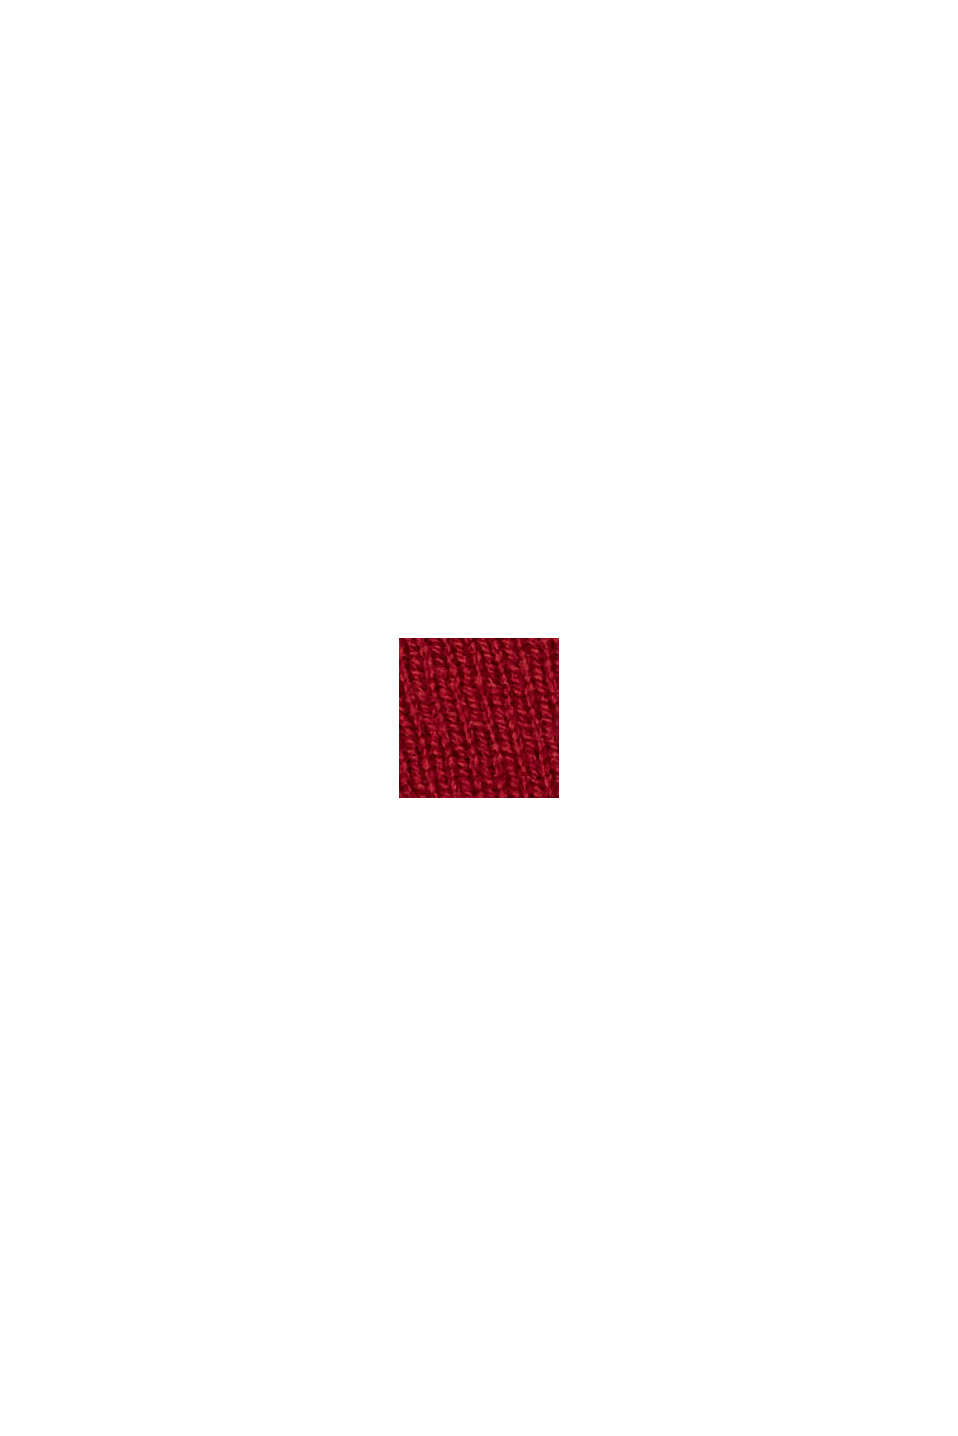 En cachemire/laine RWS : bandeau en maille, RED, swatch